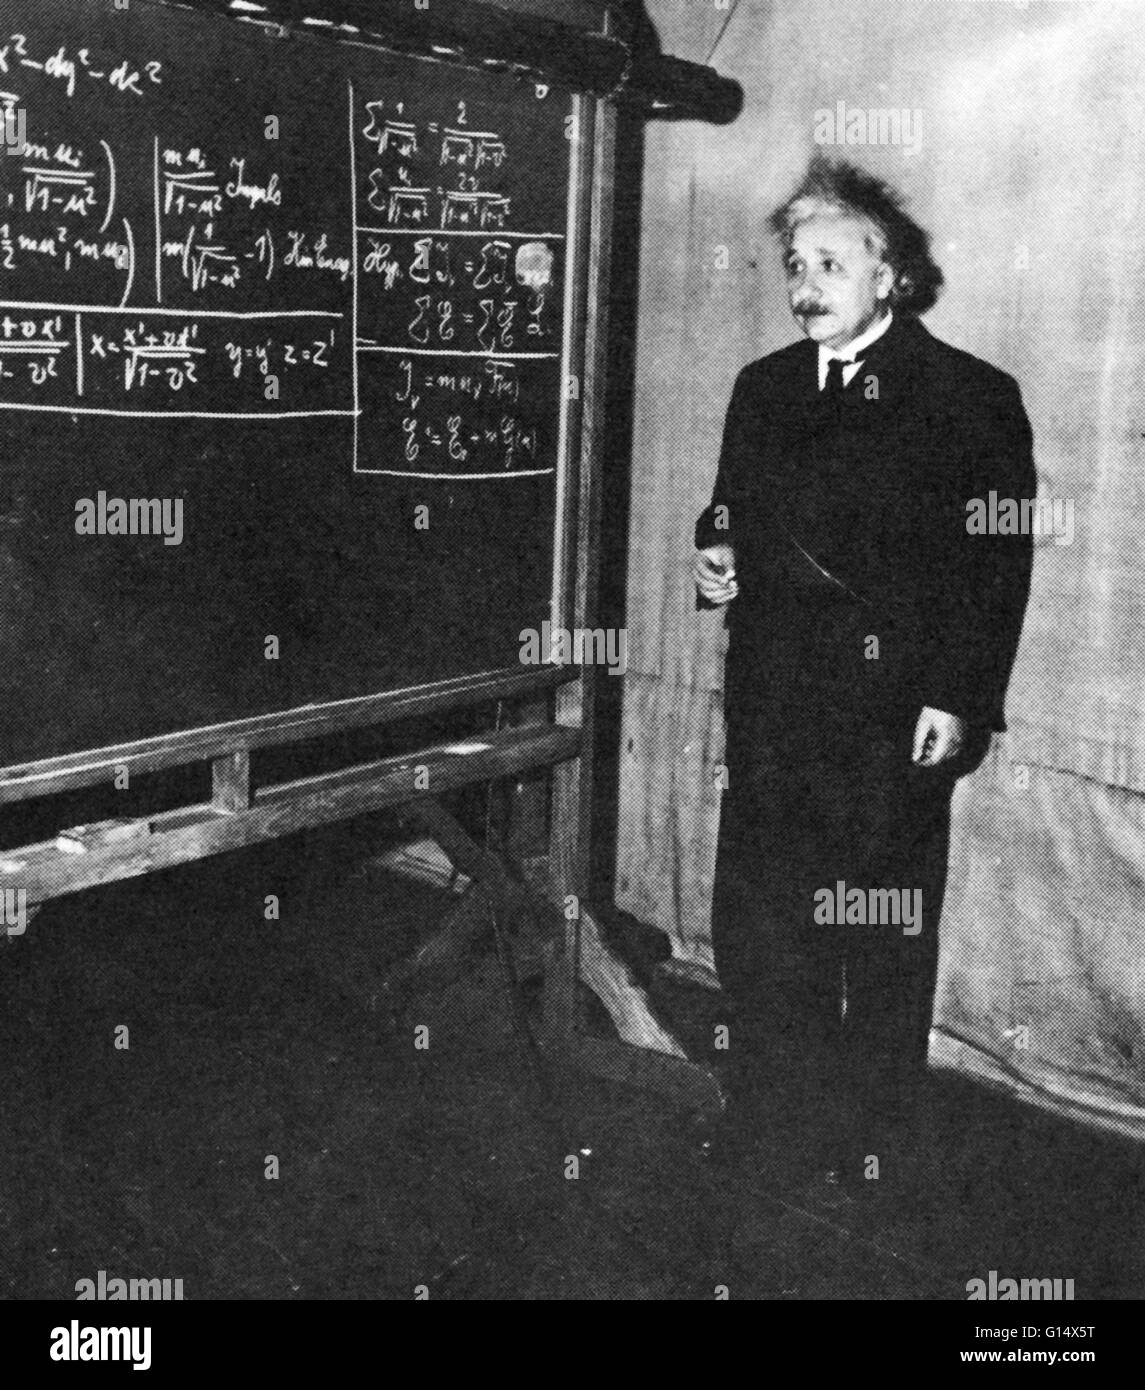 Foto non datata di Einstein presso la Princeton University. Albert Einstein (Marzo 14, 1879 - 18 Aprile 1955) era un tedesco-nato fisico teorico che hanno sviluppato la teoria della relatività generale, effettuando una rivoluzione nel campo della fisica. Einstein è spesso considerata come t Foto Stock